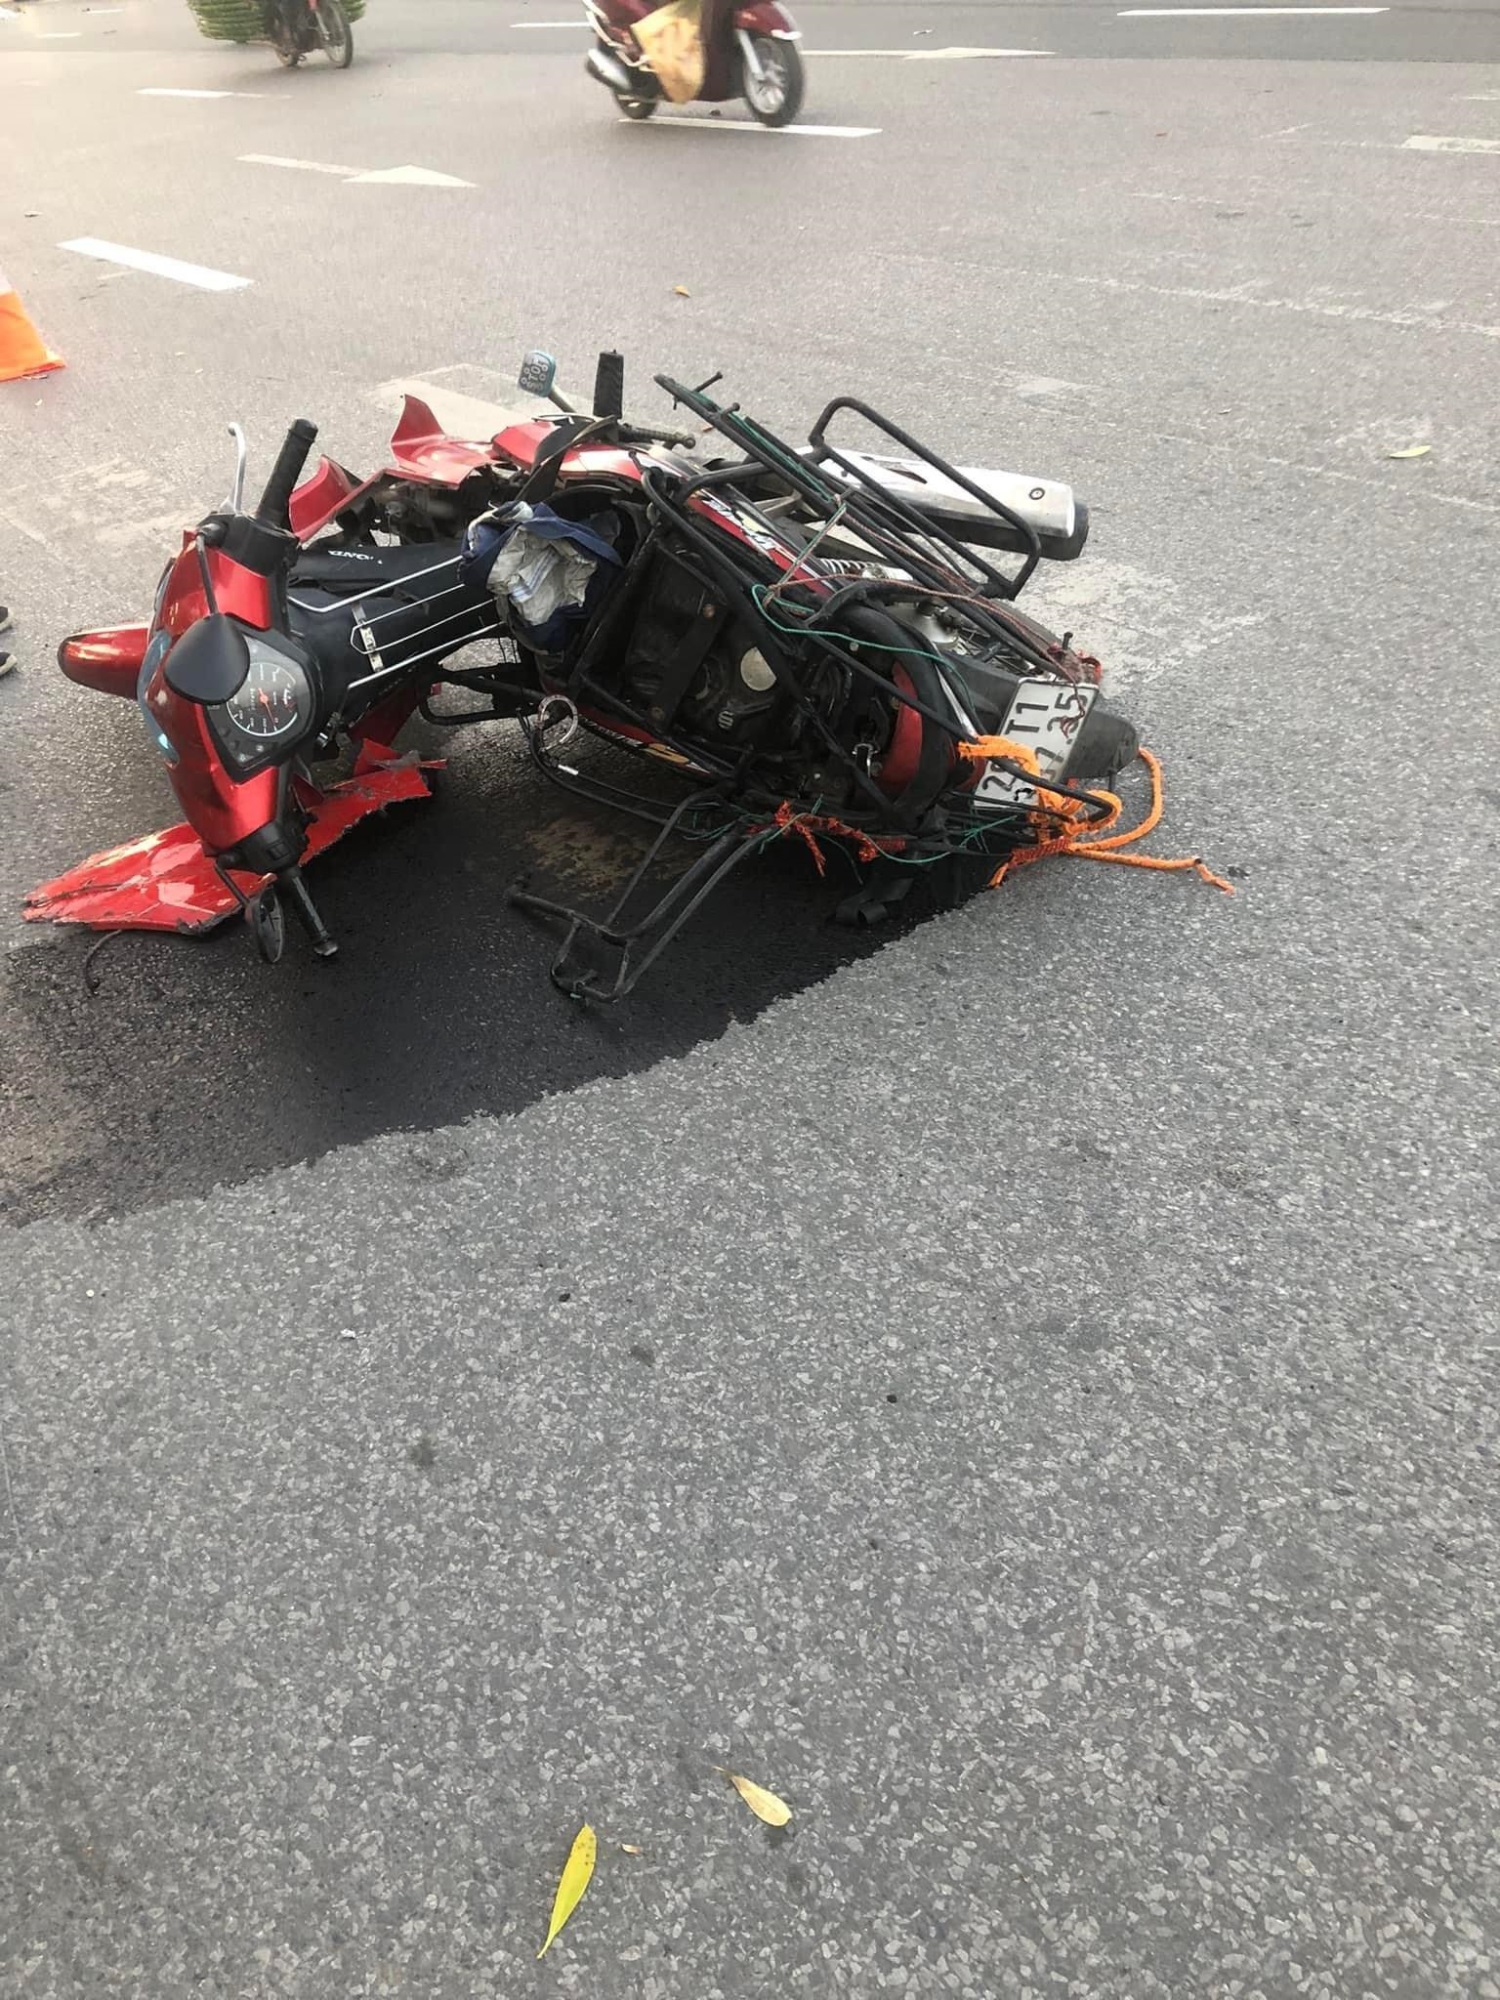 Tài xế siêu xe Ferrari 488 tông chết người đã ra đầu thú: Khai nhận lý do rời khỏi hiện trường sau tai nạn - Ảnh 2